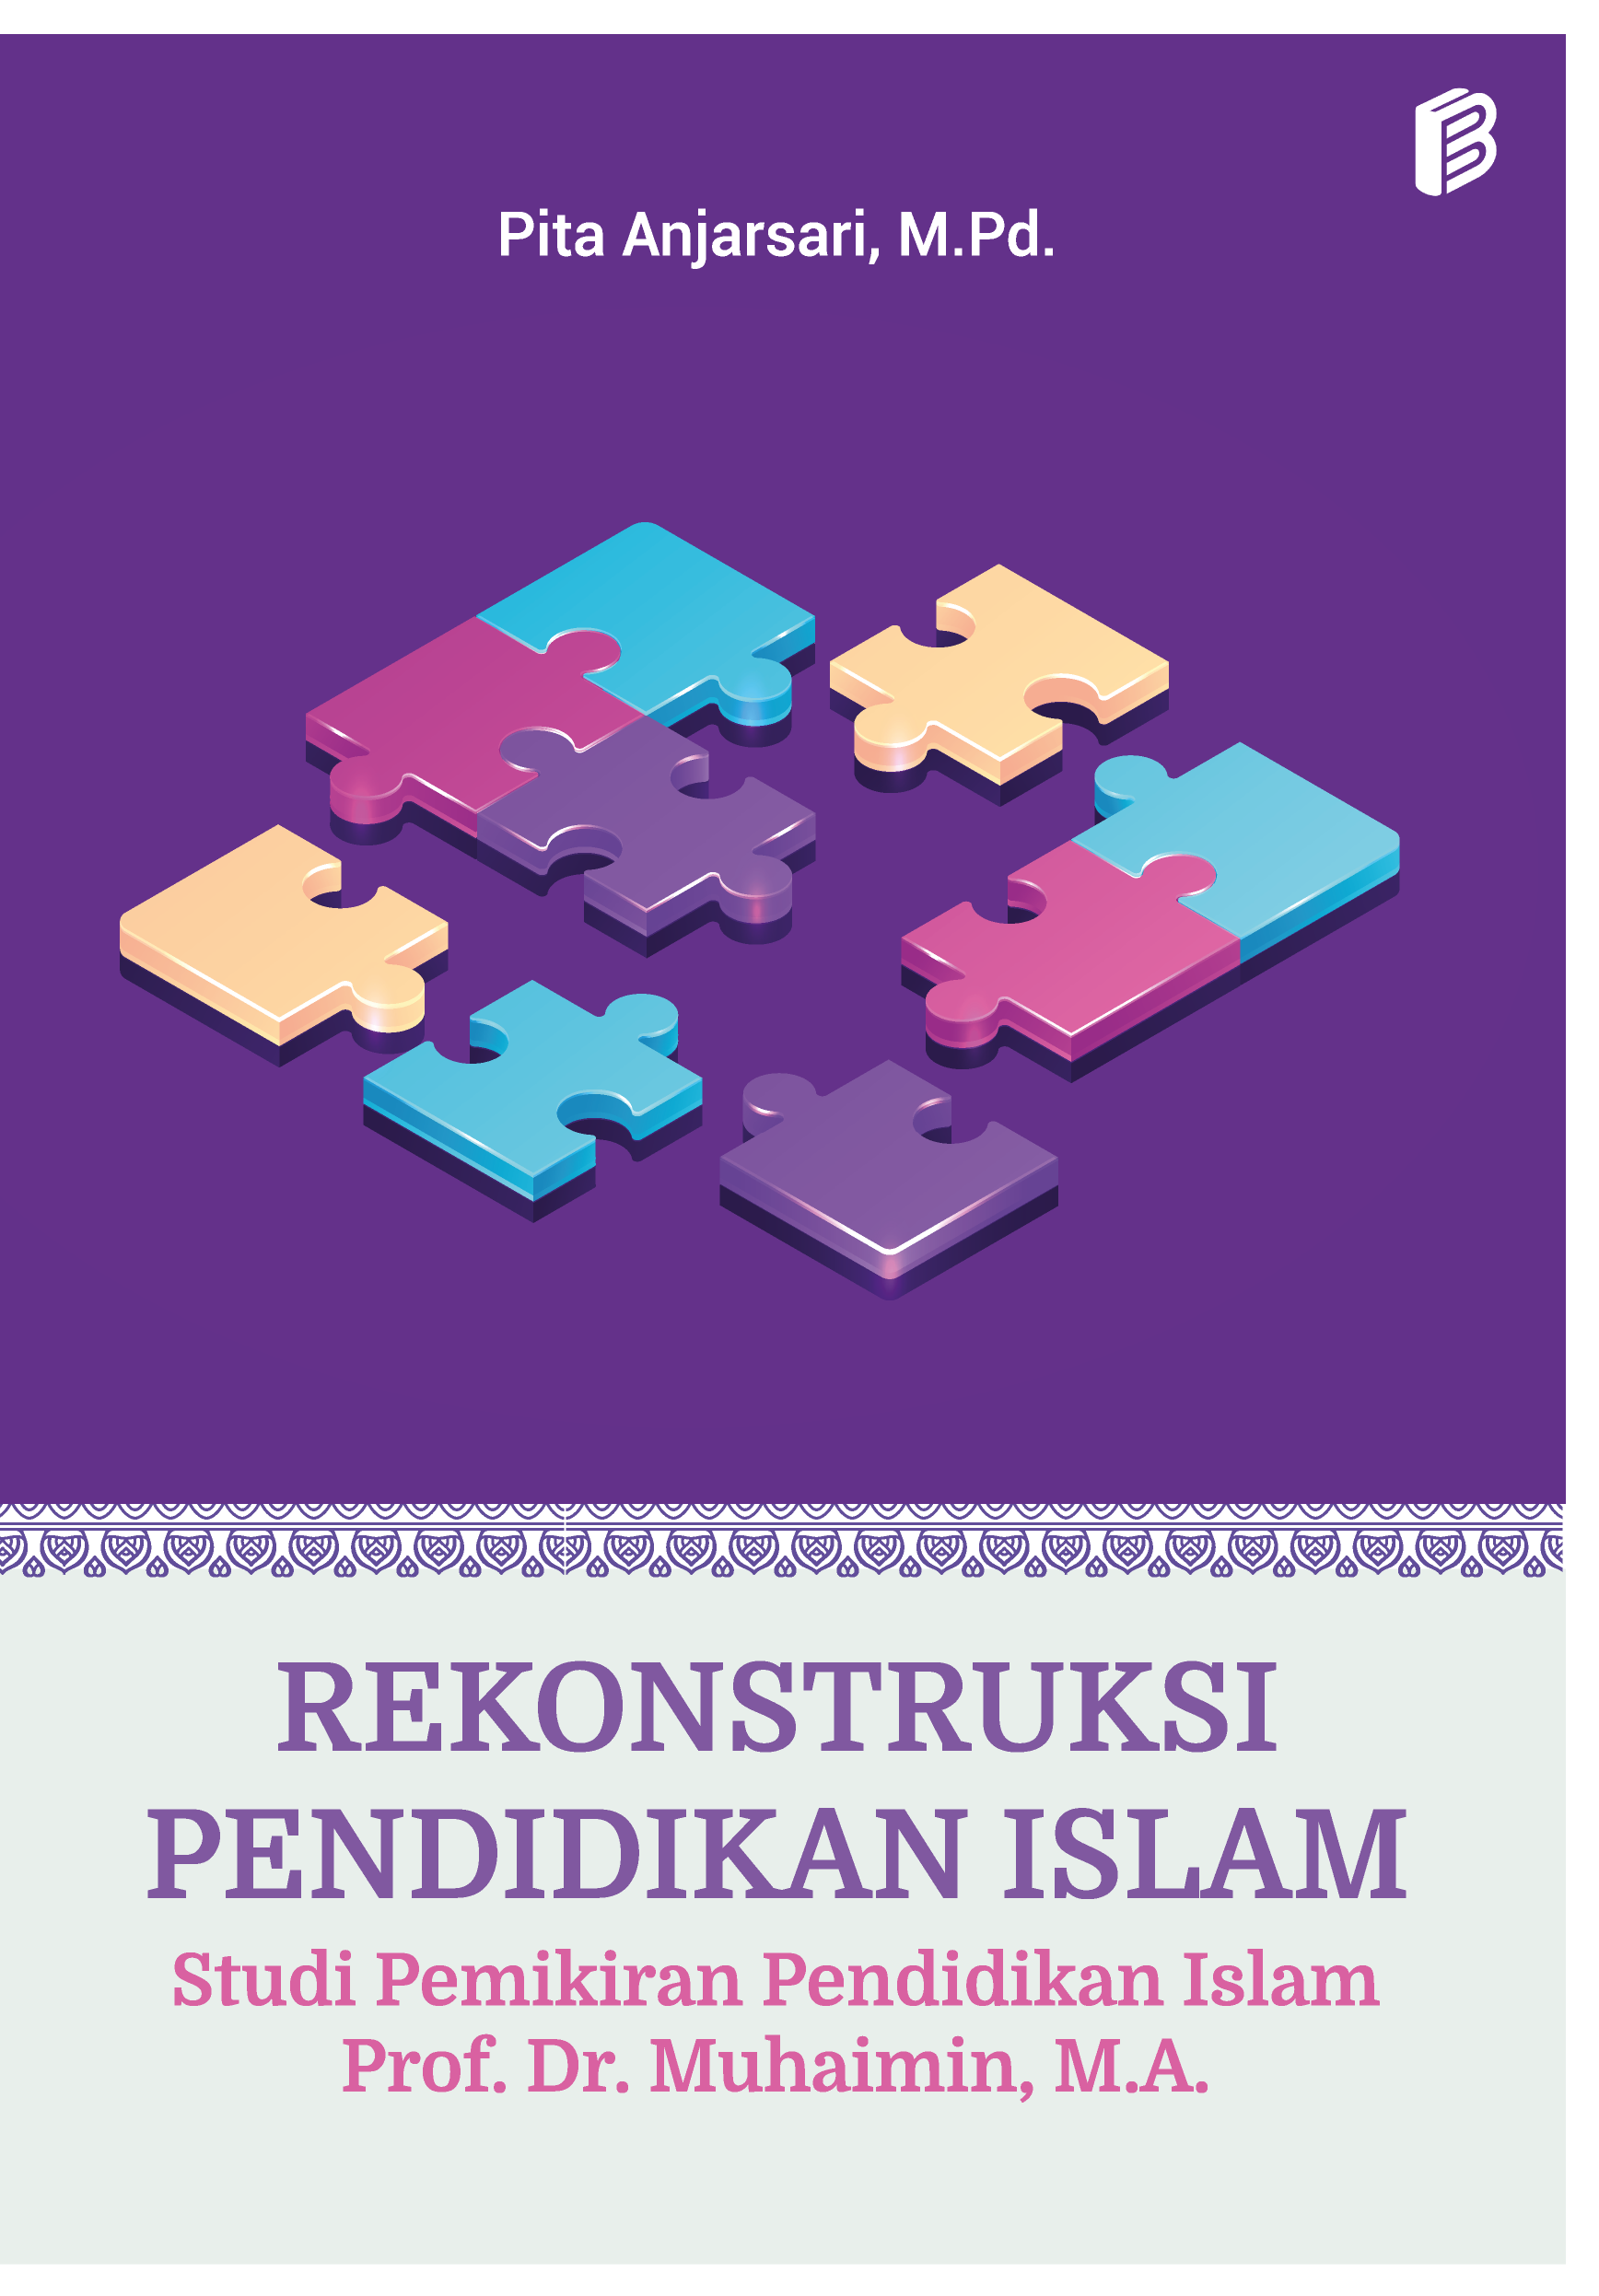 cover/(17-10-2022)rekonstruksi-pendidikan-islam.png